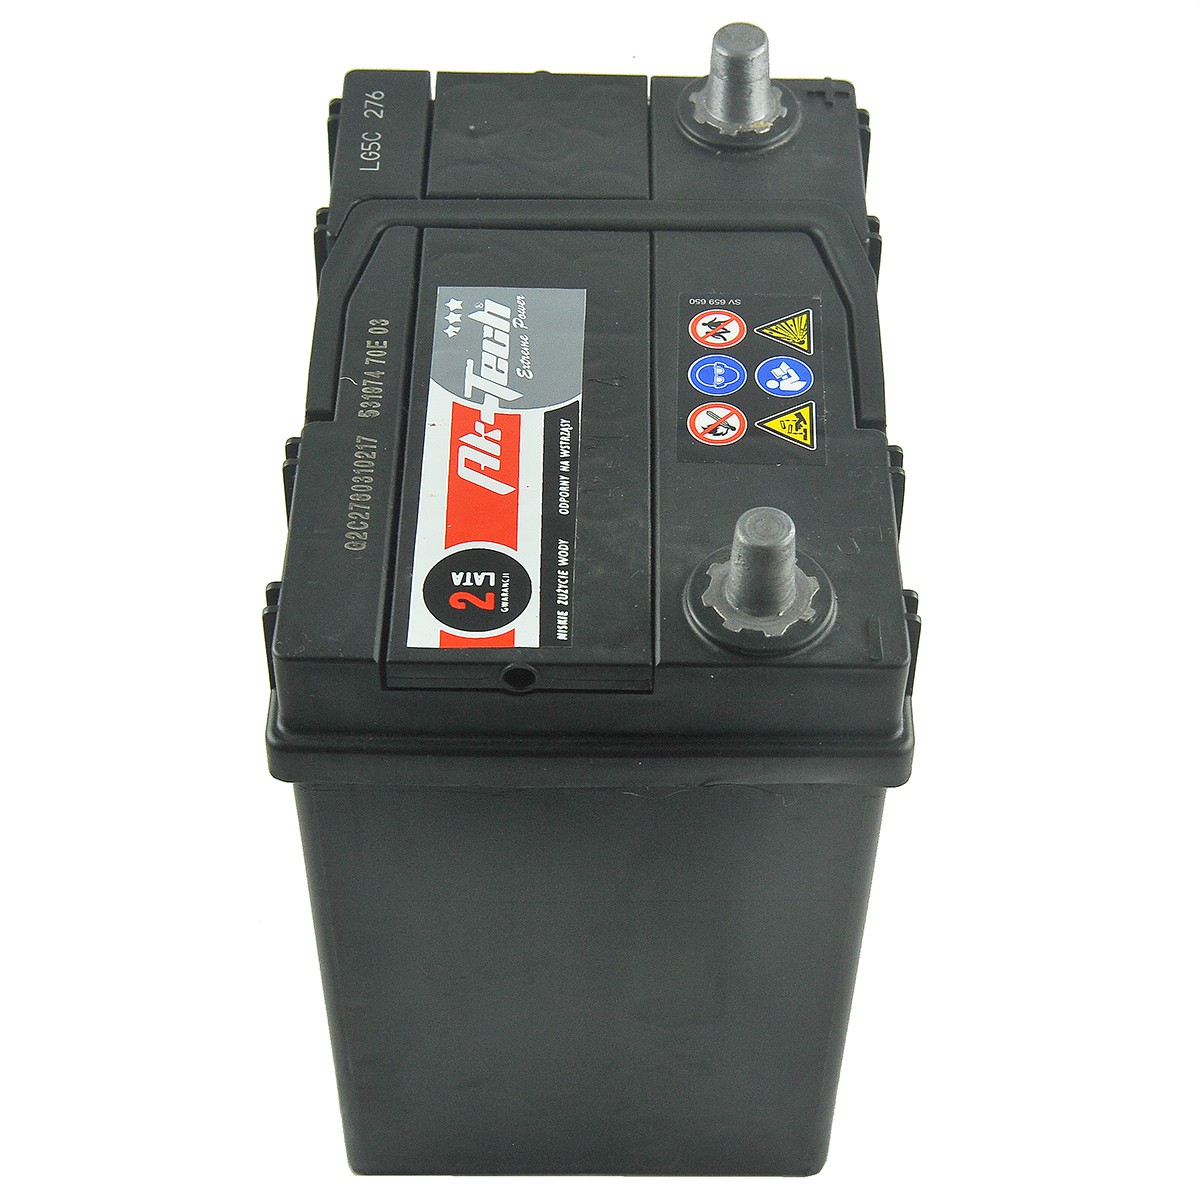 Starterbatterie Autobatterie 12V 55Ah 480A/EN BARS